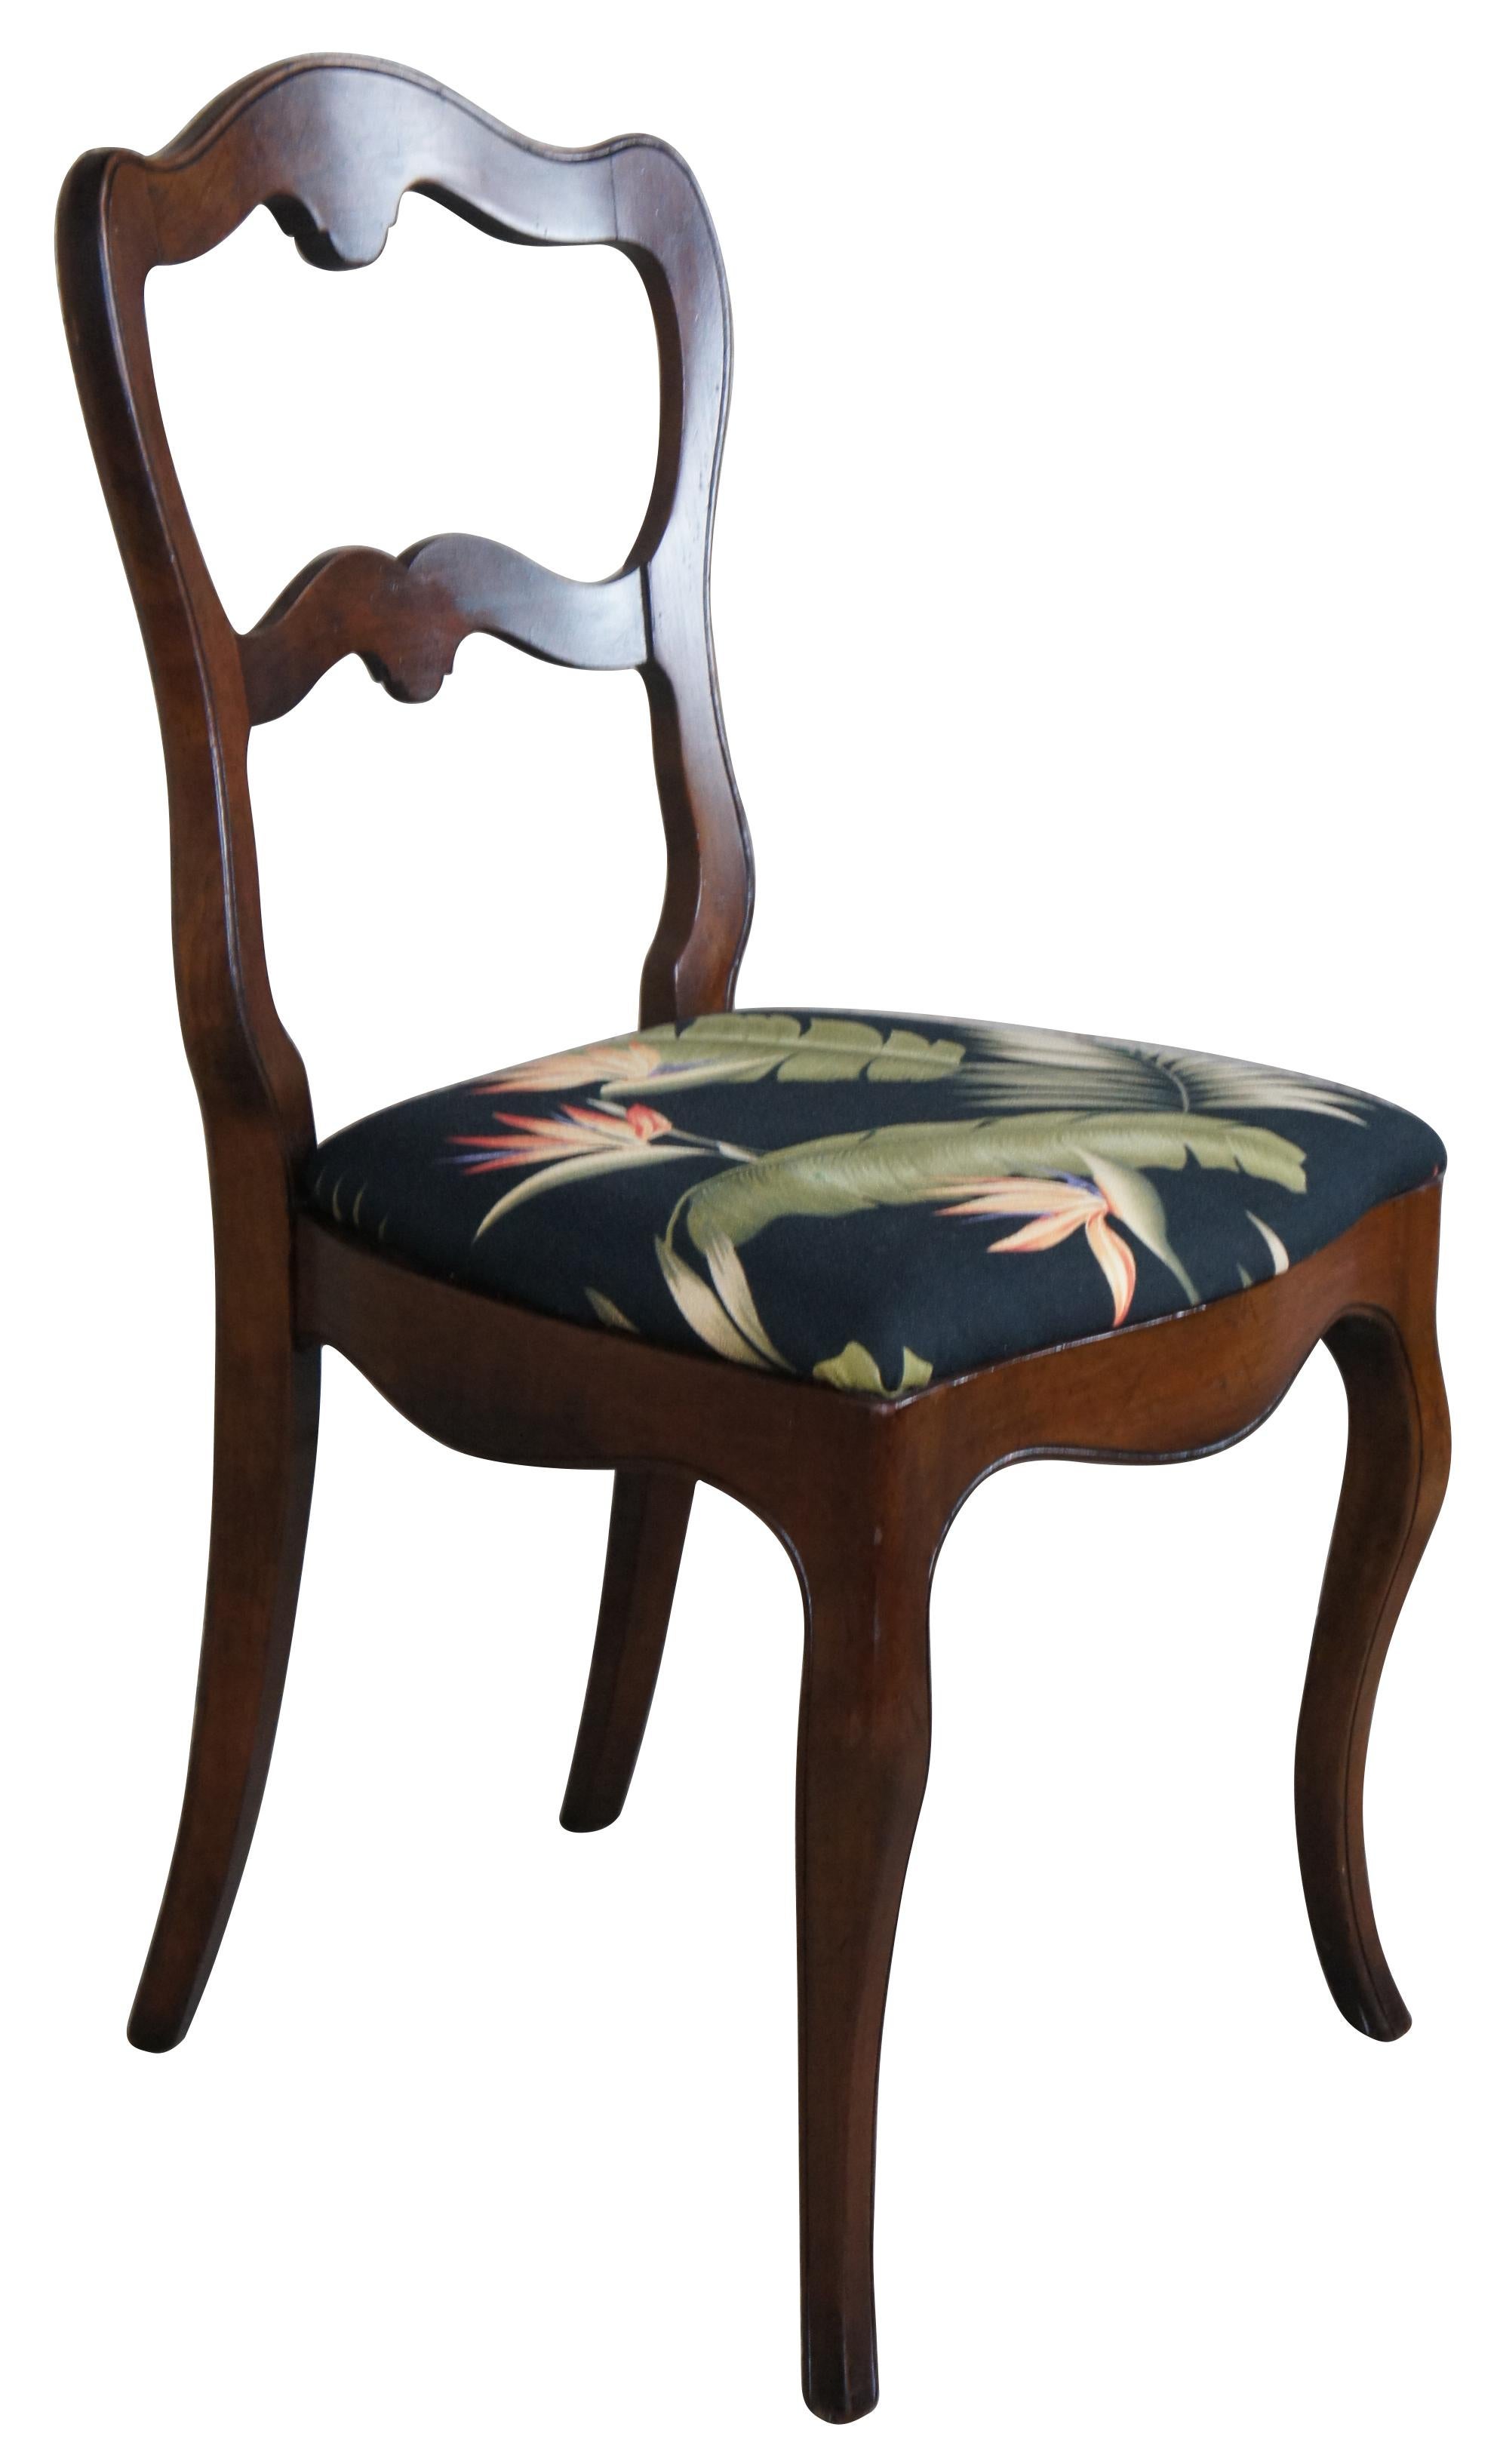 Ensemble de 3 chaises de salle à manger ou d'appoint de la fin du XIXe siècle. Fabriqué en noyer avec un dossier serpentin, un tissu tropical et des pieds cabriole.